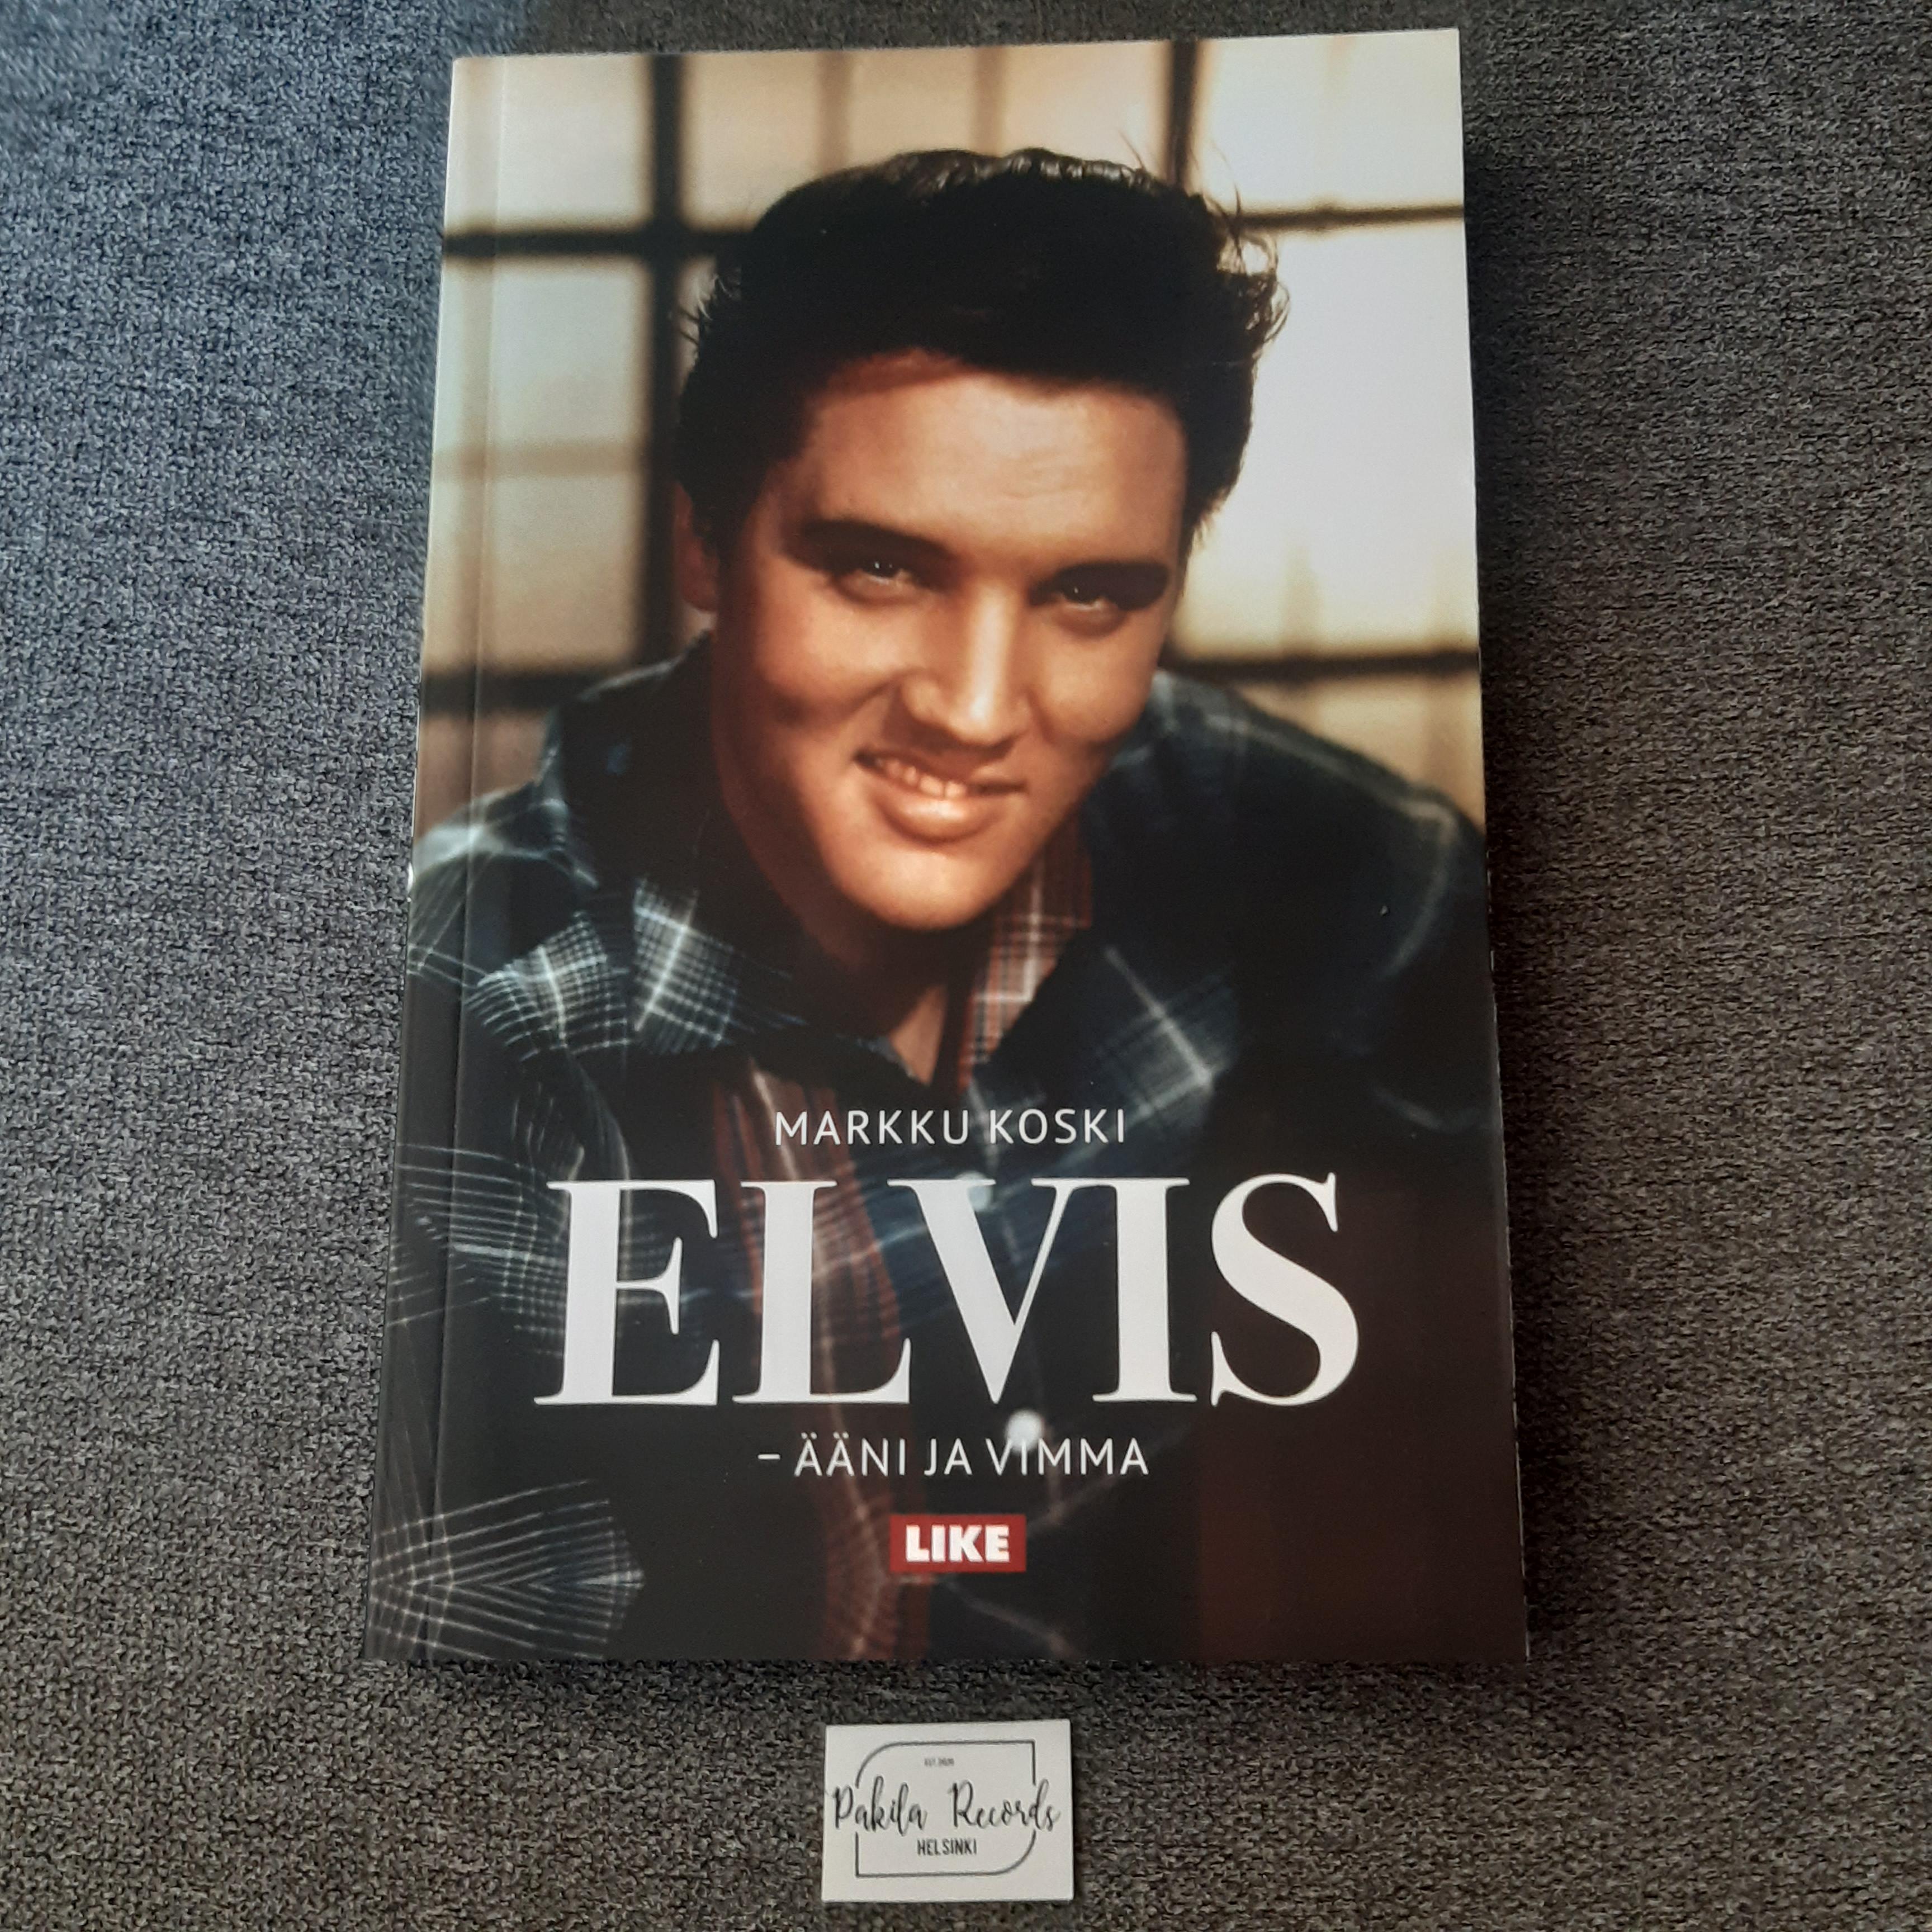 Elvis, Ääni ja vimma - Markku Koski - Kirja (käytetty)